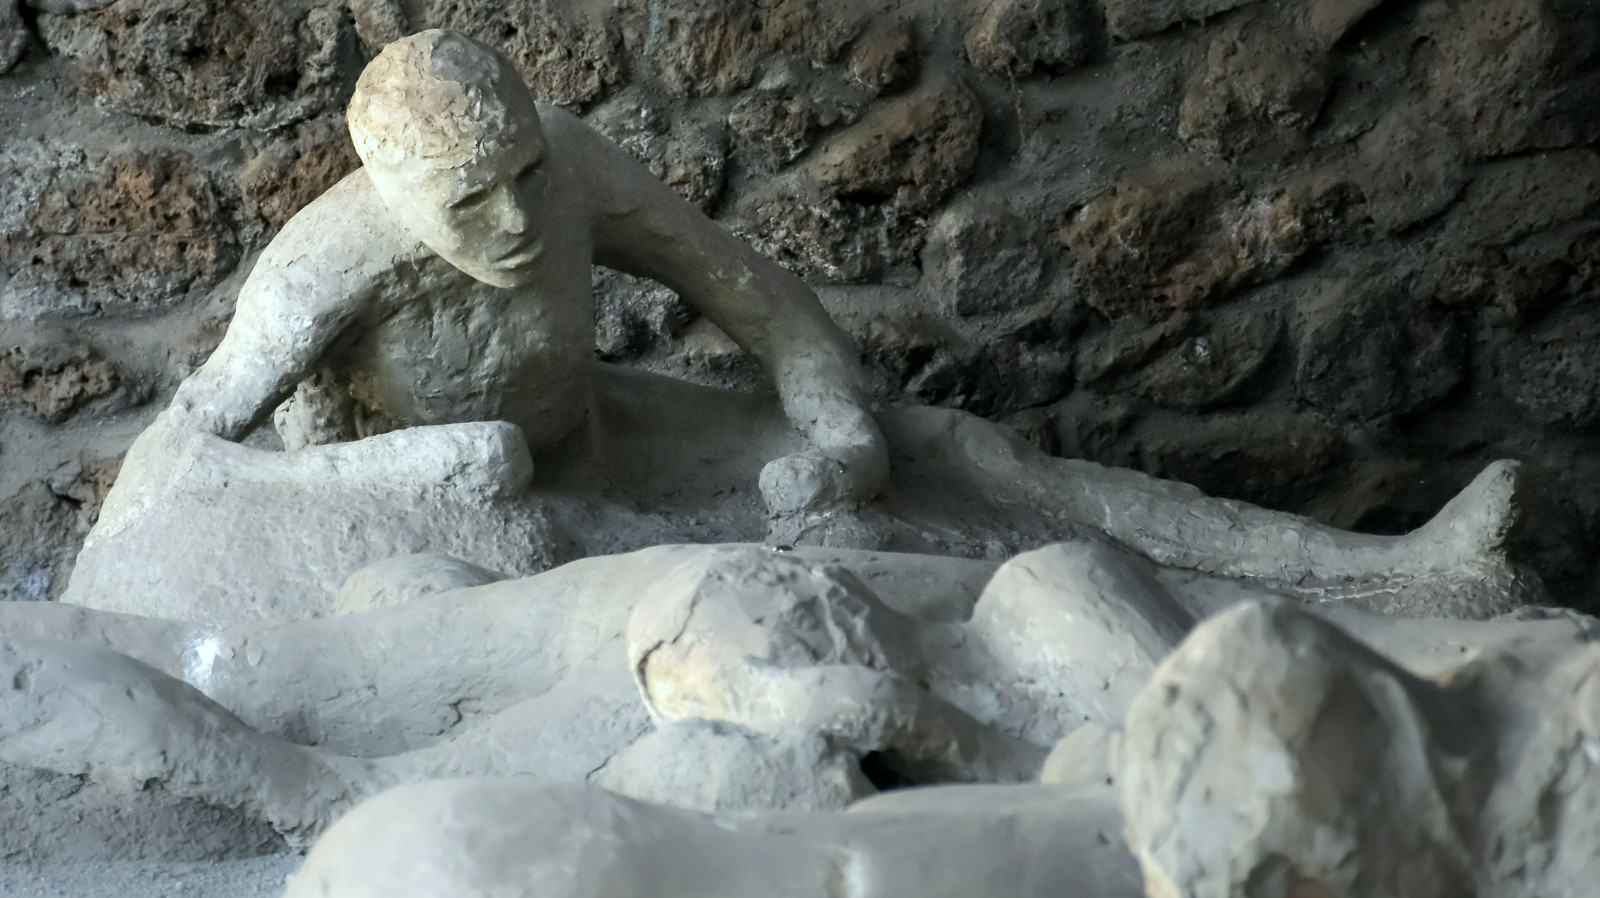 Ulaş Utku Bozdoğan: Pompeii'Nin Taş Insan Cesetleri Ve Şaşırtan Gerçek: Onlar Aslında Insan Cesedi Değil 3